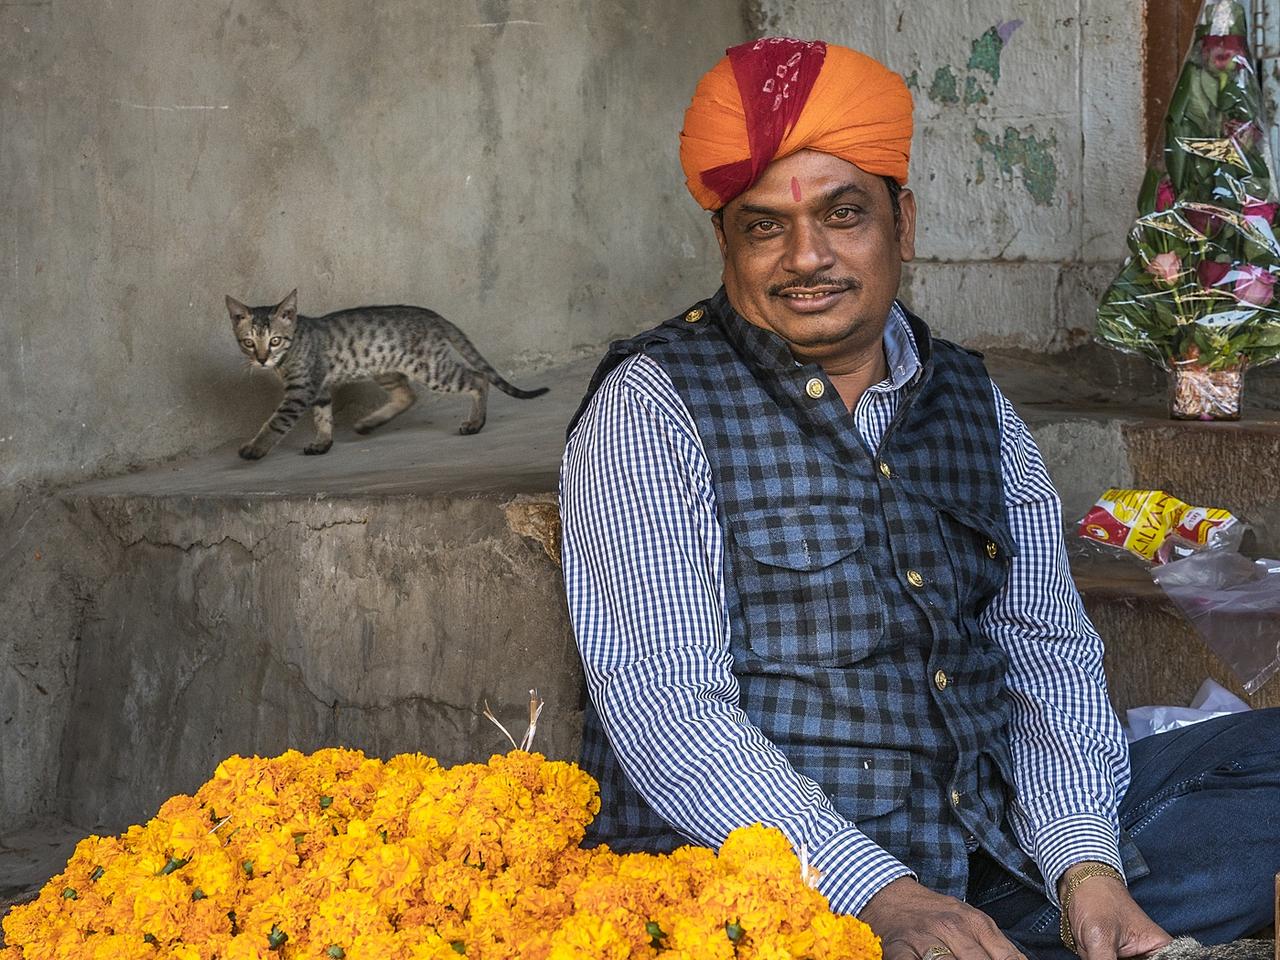 Cat walks behind marigold vendor in market stall in Jaisalmer Fort.